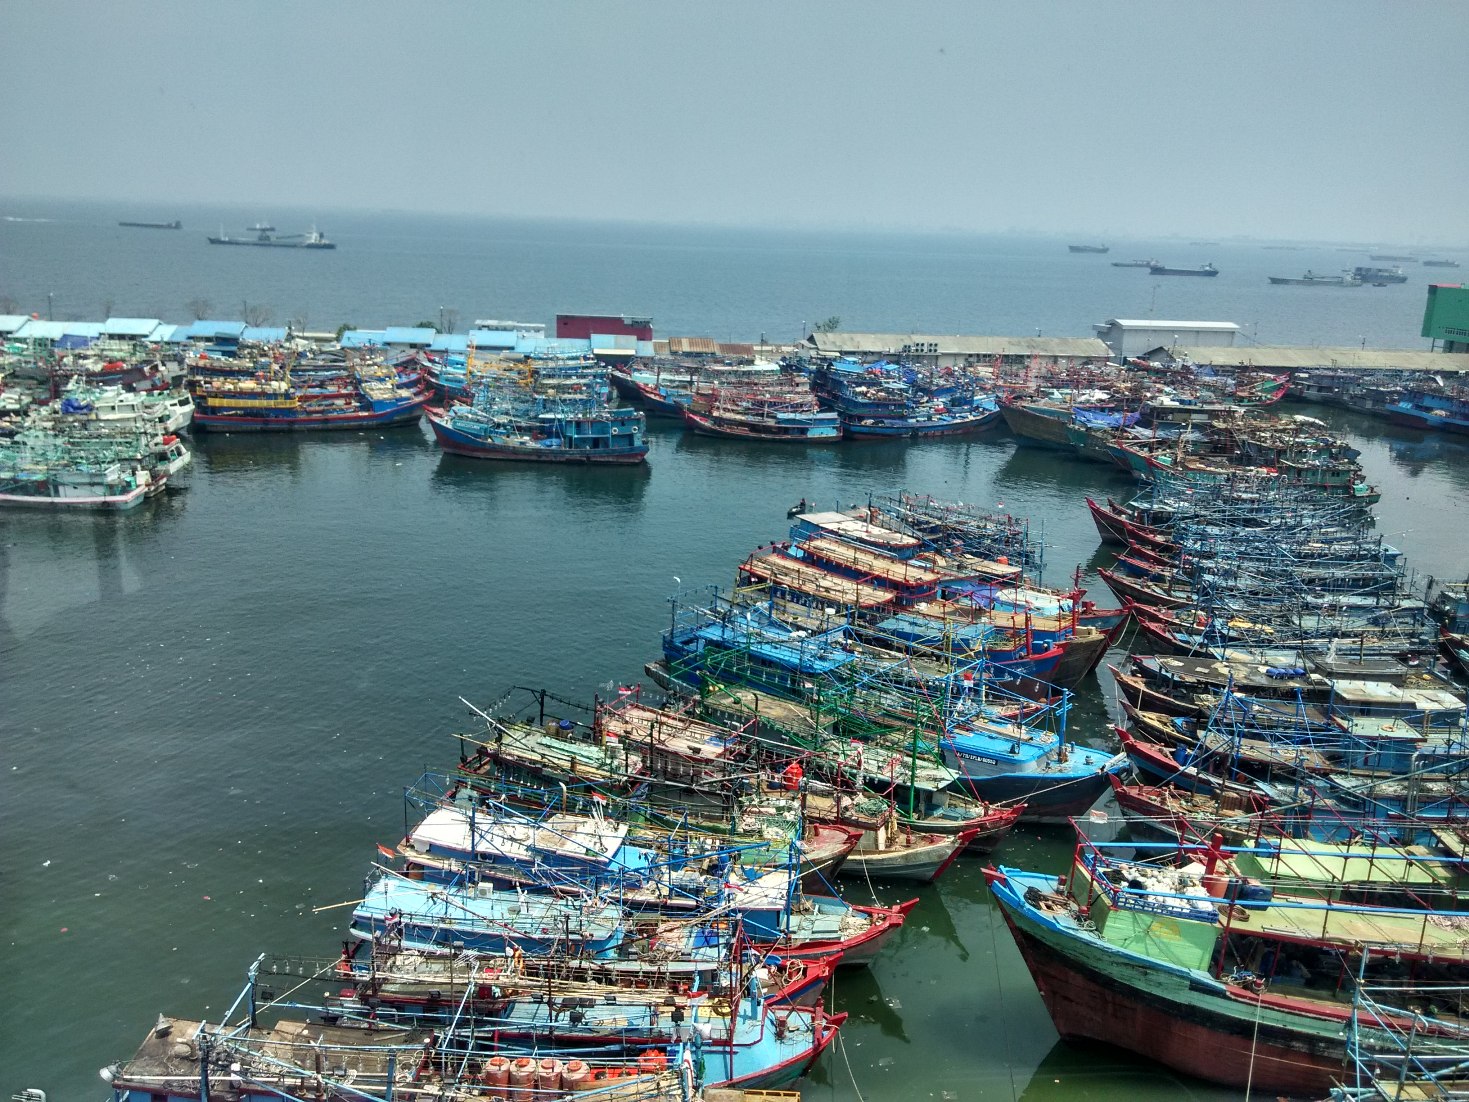 Puluhan kapal penangkap ikan yang bersandar di di Pelabuhan Perikanan Nizam Zachman Muara Baru, Jakarta Utara pada Selasa (19/01/2016) siang. Kapal-kapal tersebut tidak beroperasi karena tidak mempunyai izin atau sedang mengurus izin melaut dari KKP. Foto : M Ambari